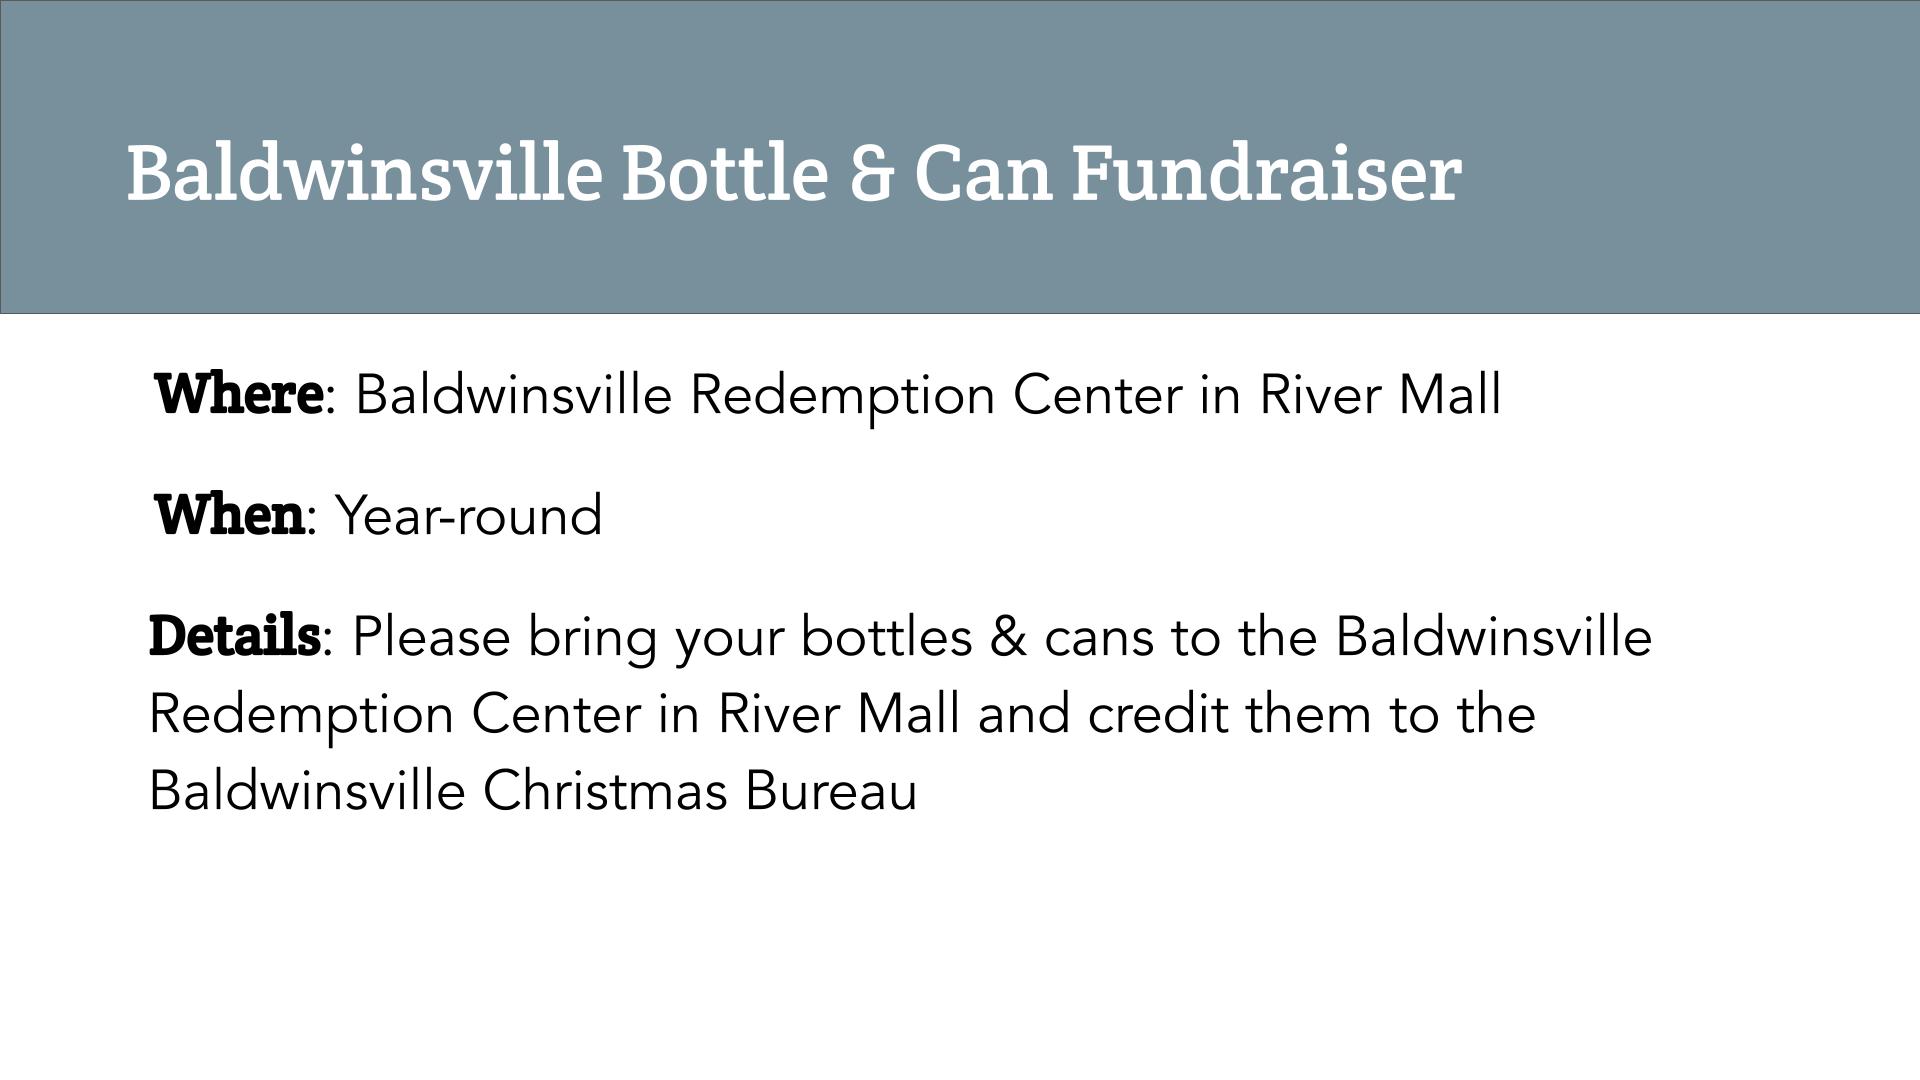 Baldwinsville Bottle & Can Fundraiser